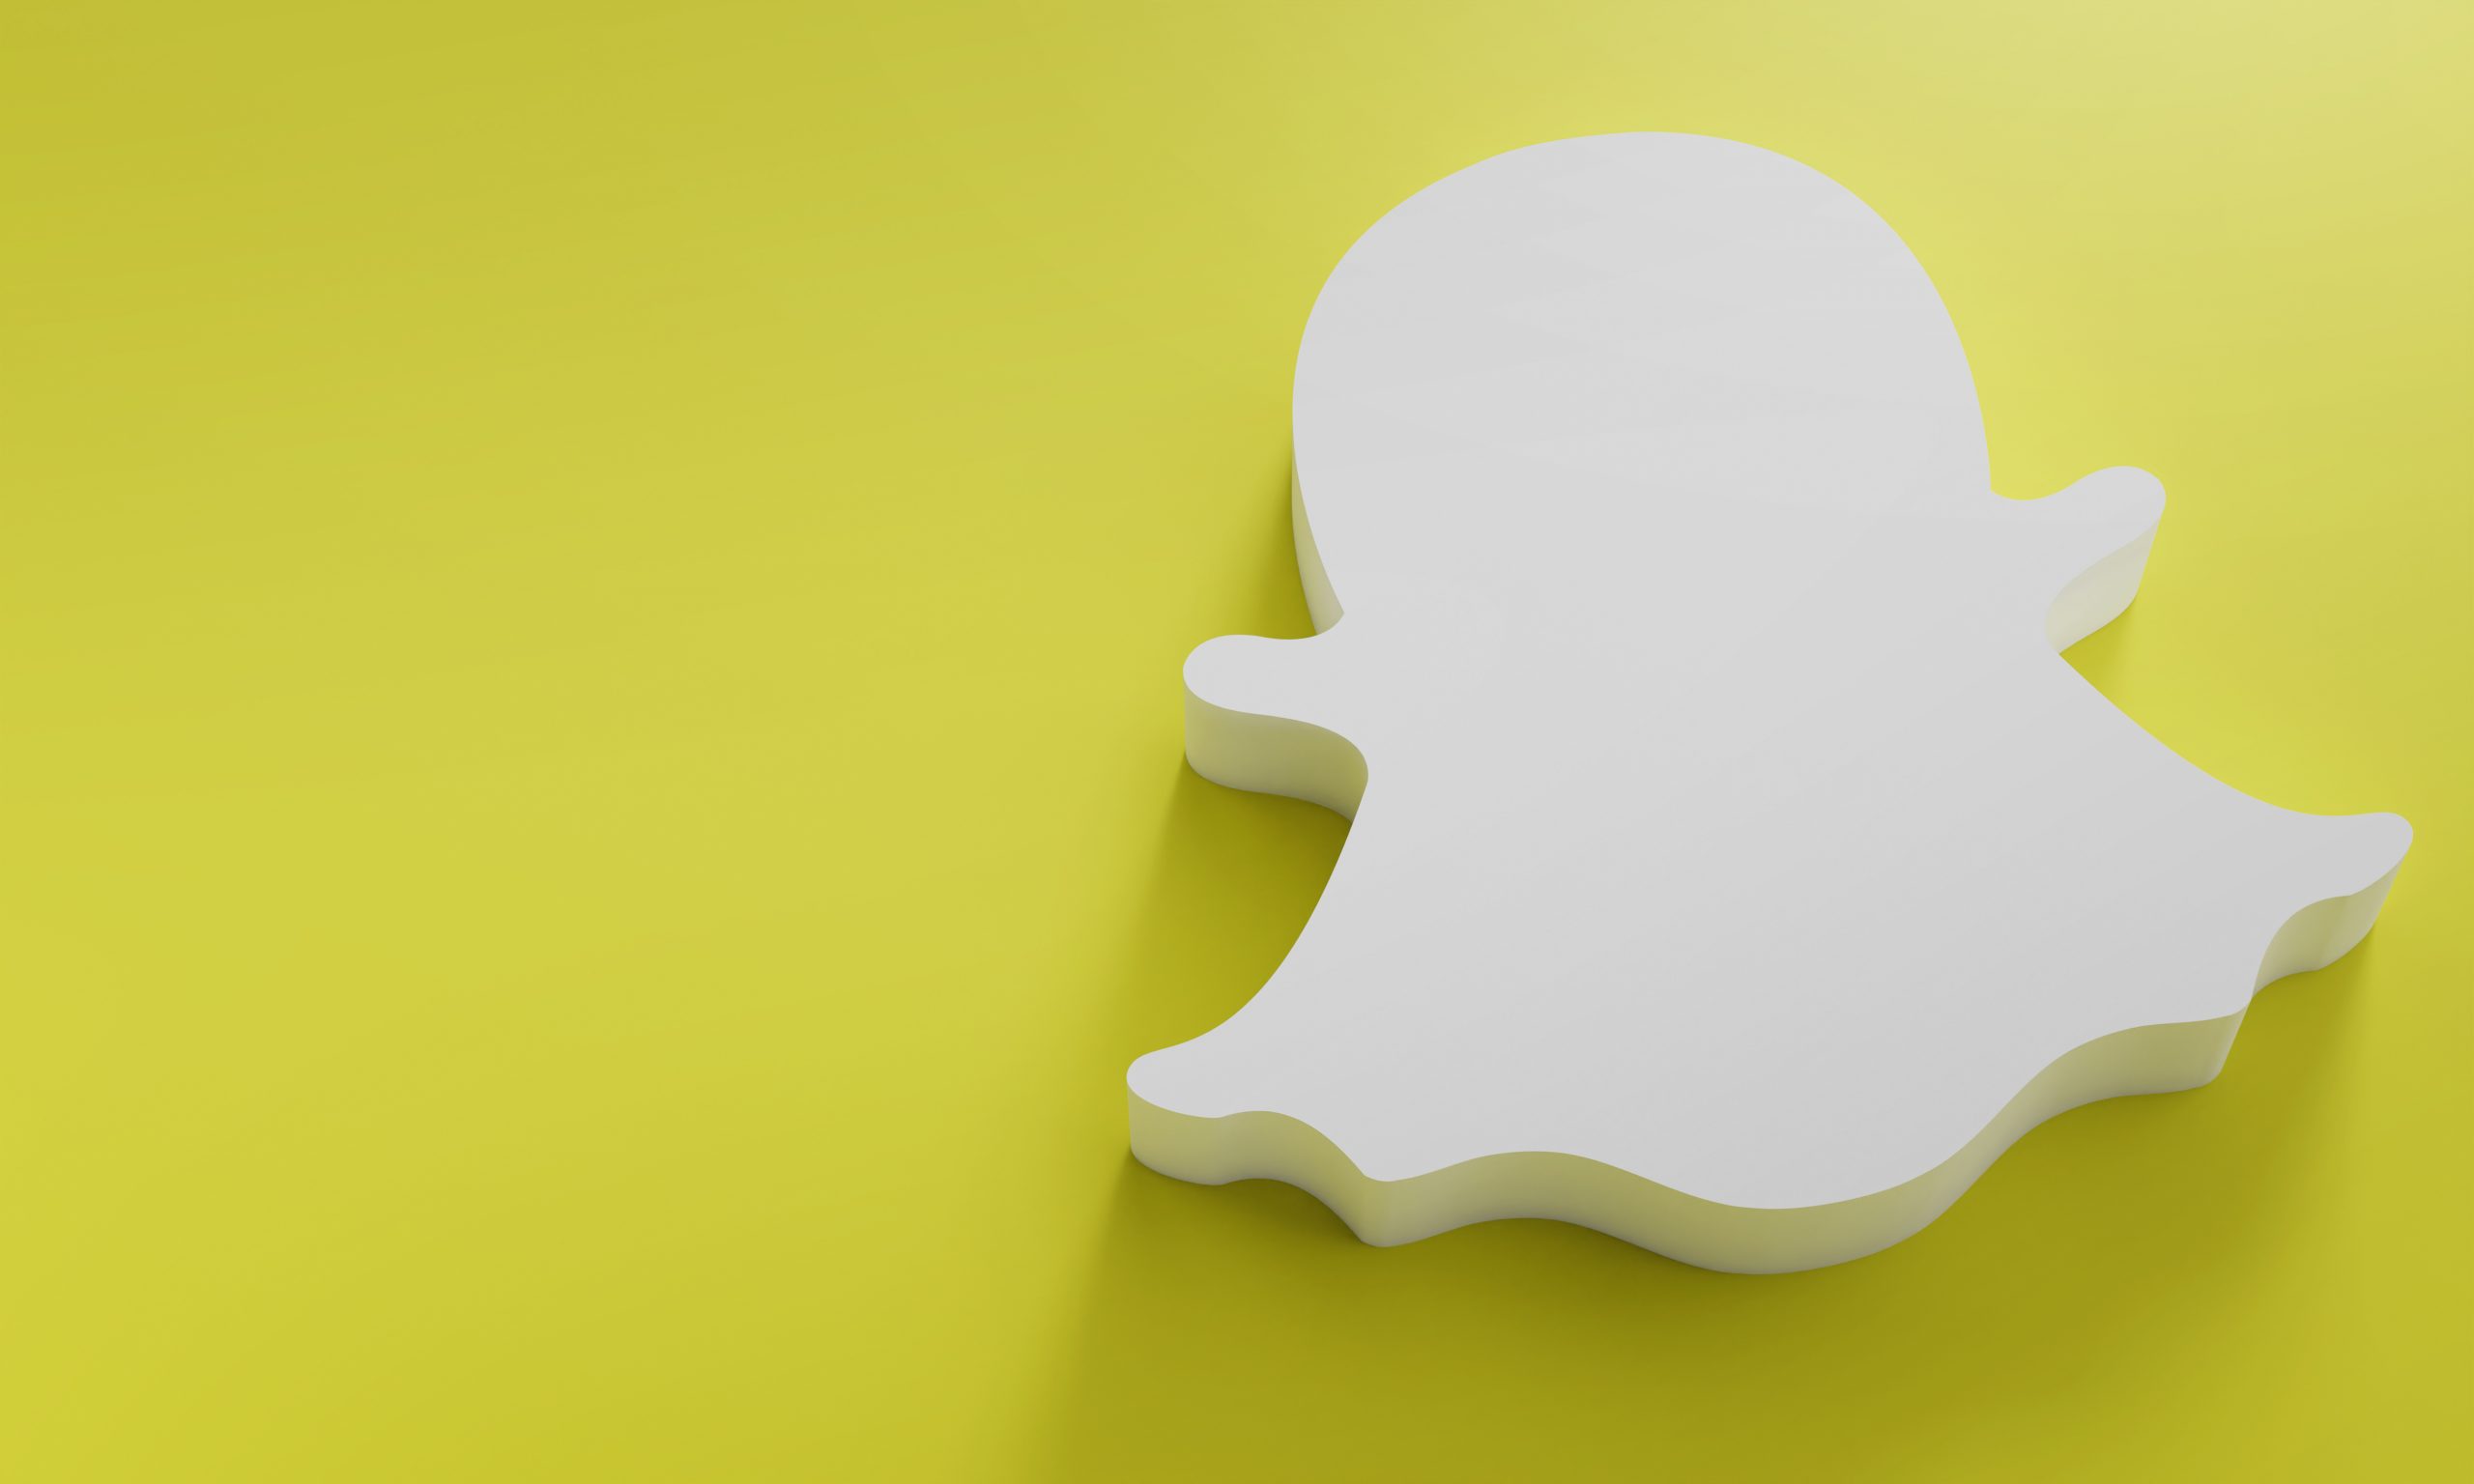 Comment pirater un compte Snapchat ? Voici 3 astuces couramment utilisées